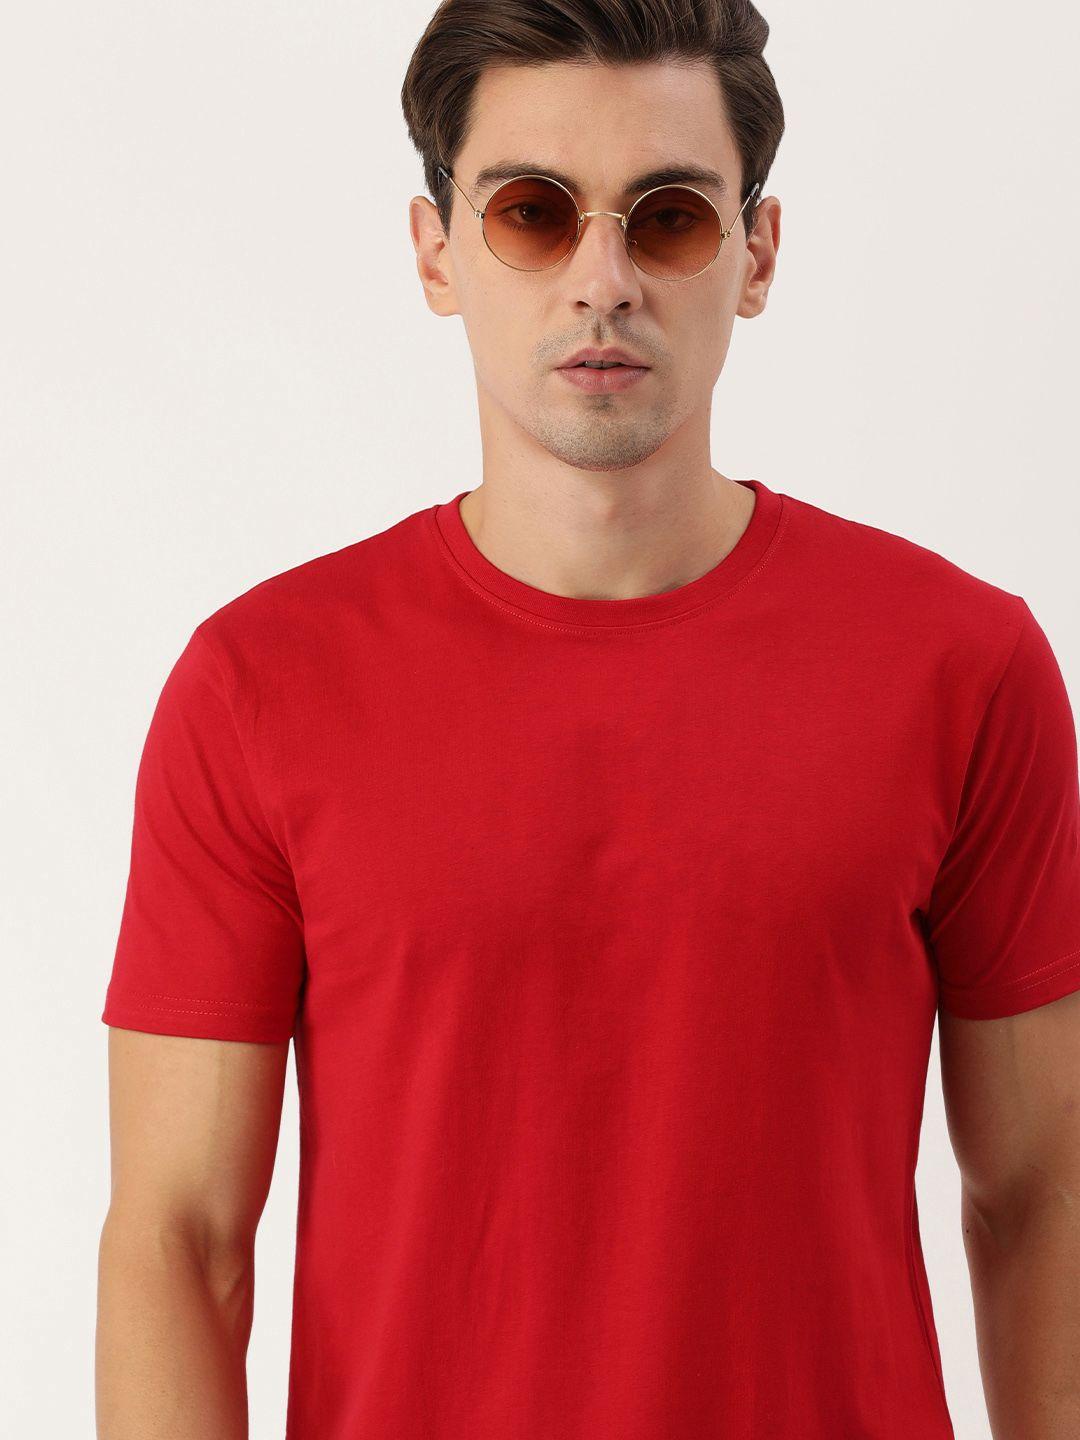 IVOC Men Red Round Neck Cotton T-shirt